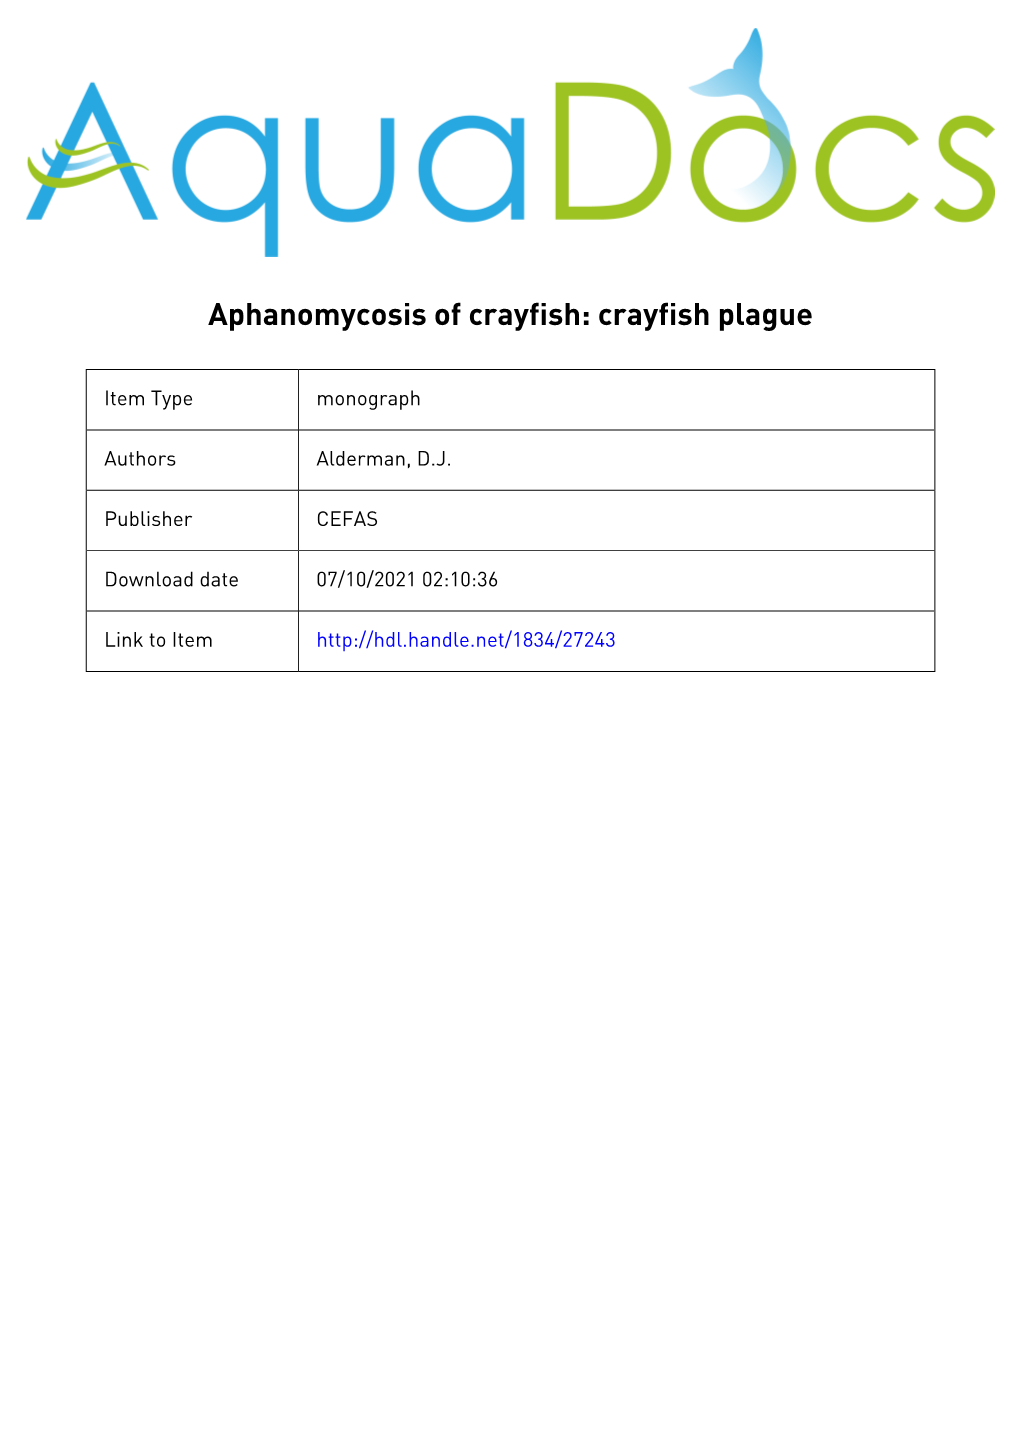 448 Aphanomycosis of Crayfish